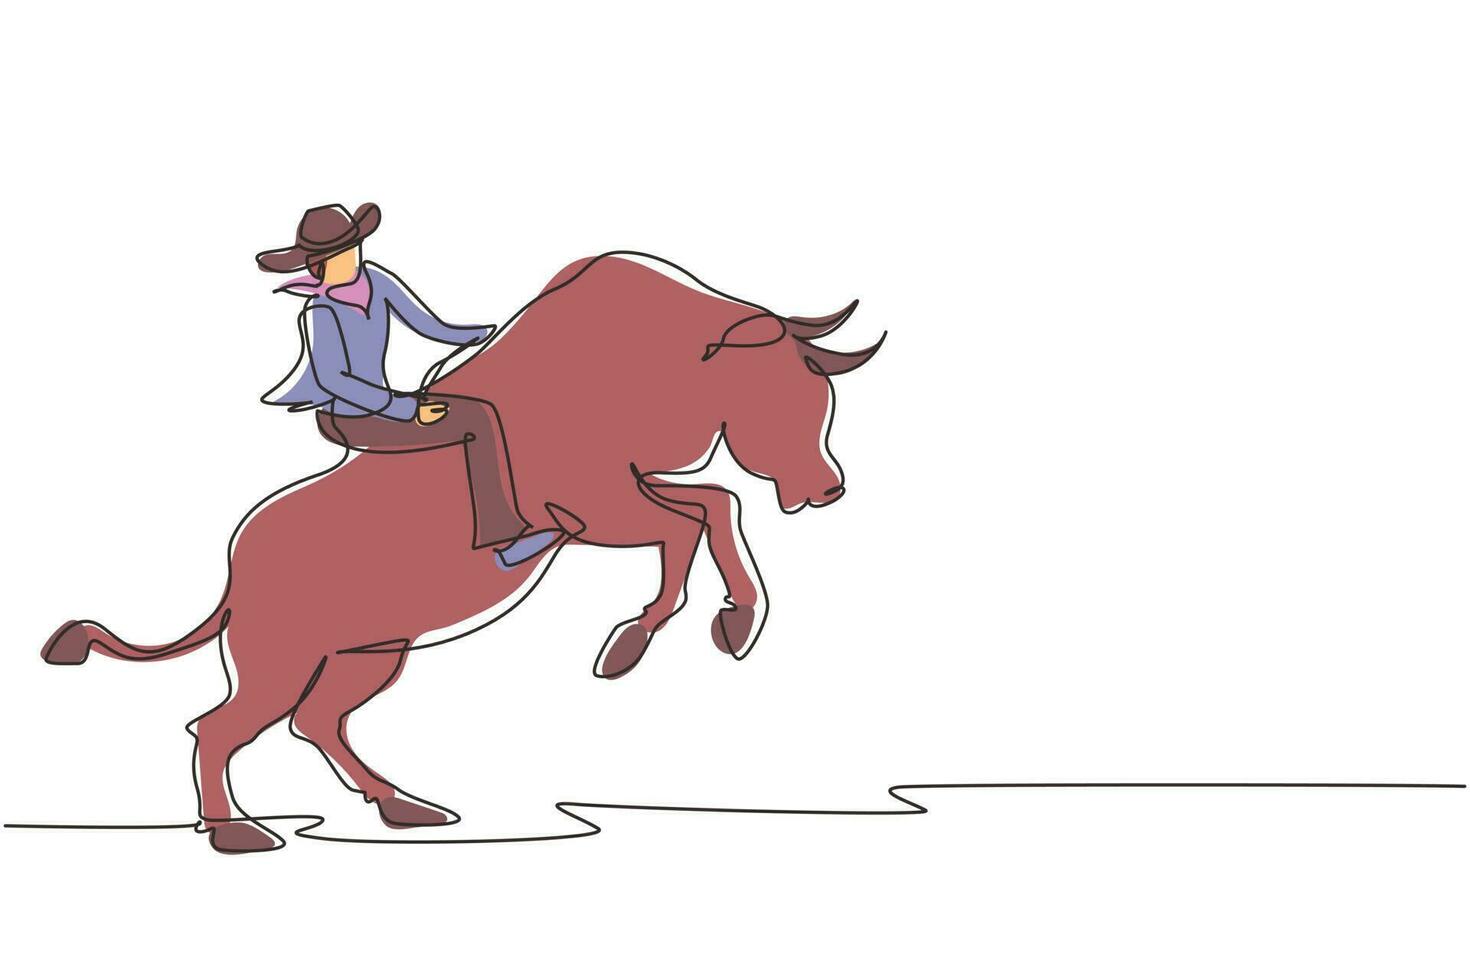 desenho de uma linha contínua forte e corajoso cowboy de chapéu participa de rodeio montando touro selvagem. cowboy montando touro selvagem. emocionante show de rodeio. ilustração gráfica de vetor de desenho de linha única